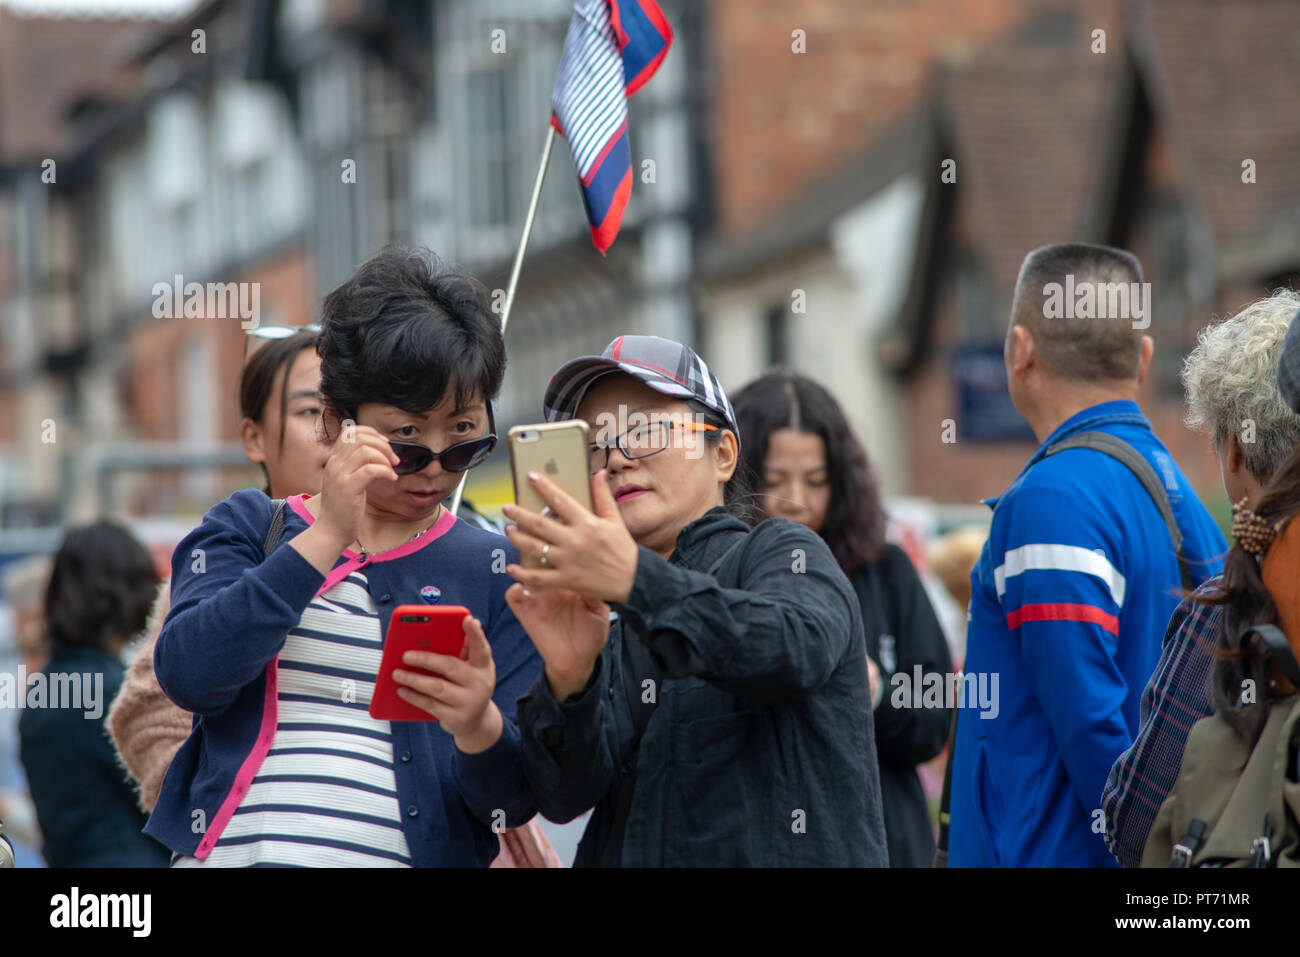 Stratford Upon Avon, Warwickshire, Angleterre Royaume-uni 15 septembre 2018 touristes chinois de prendre des photos avec des téléphones et appareils photo Banque D'Images